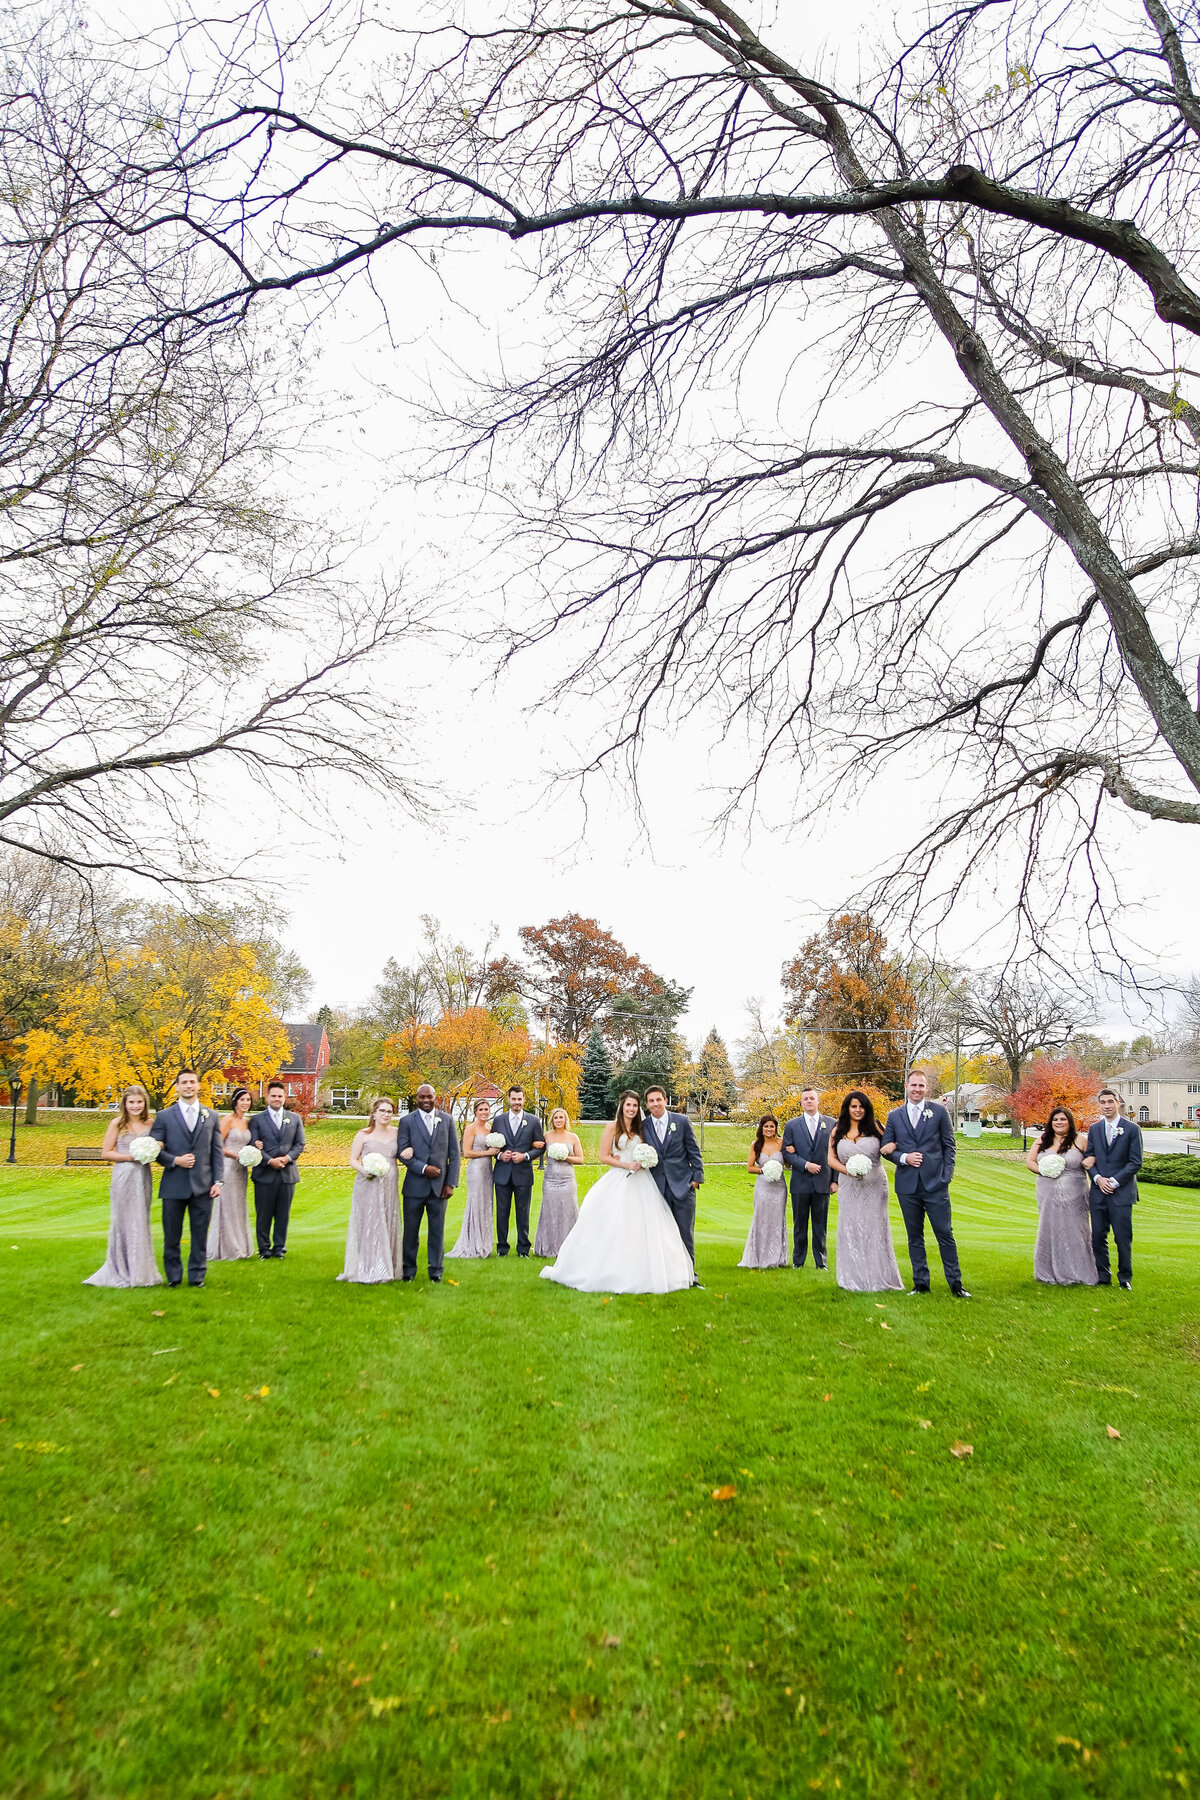 njeri-bishota-lauren-ashley-wedding-bridesmaids-groomsmen-green-grass-fall-foliage